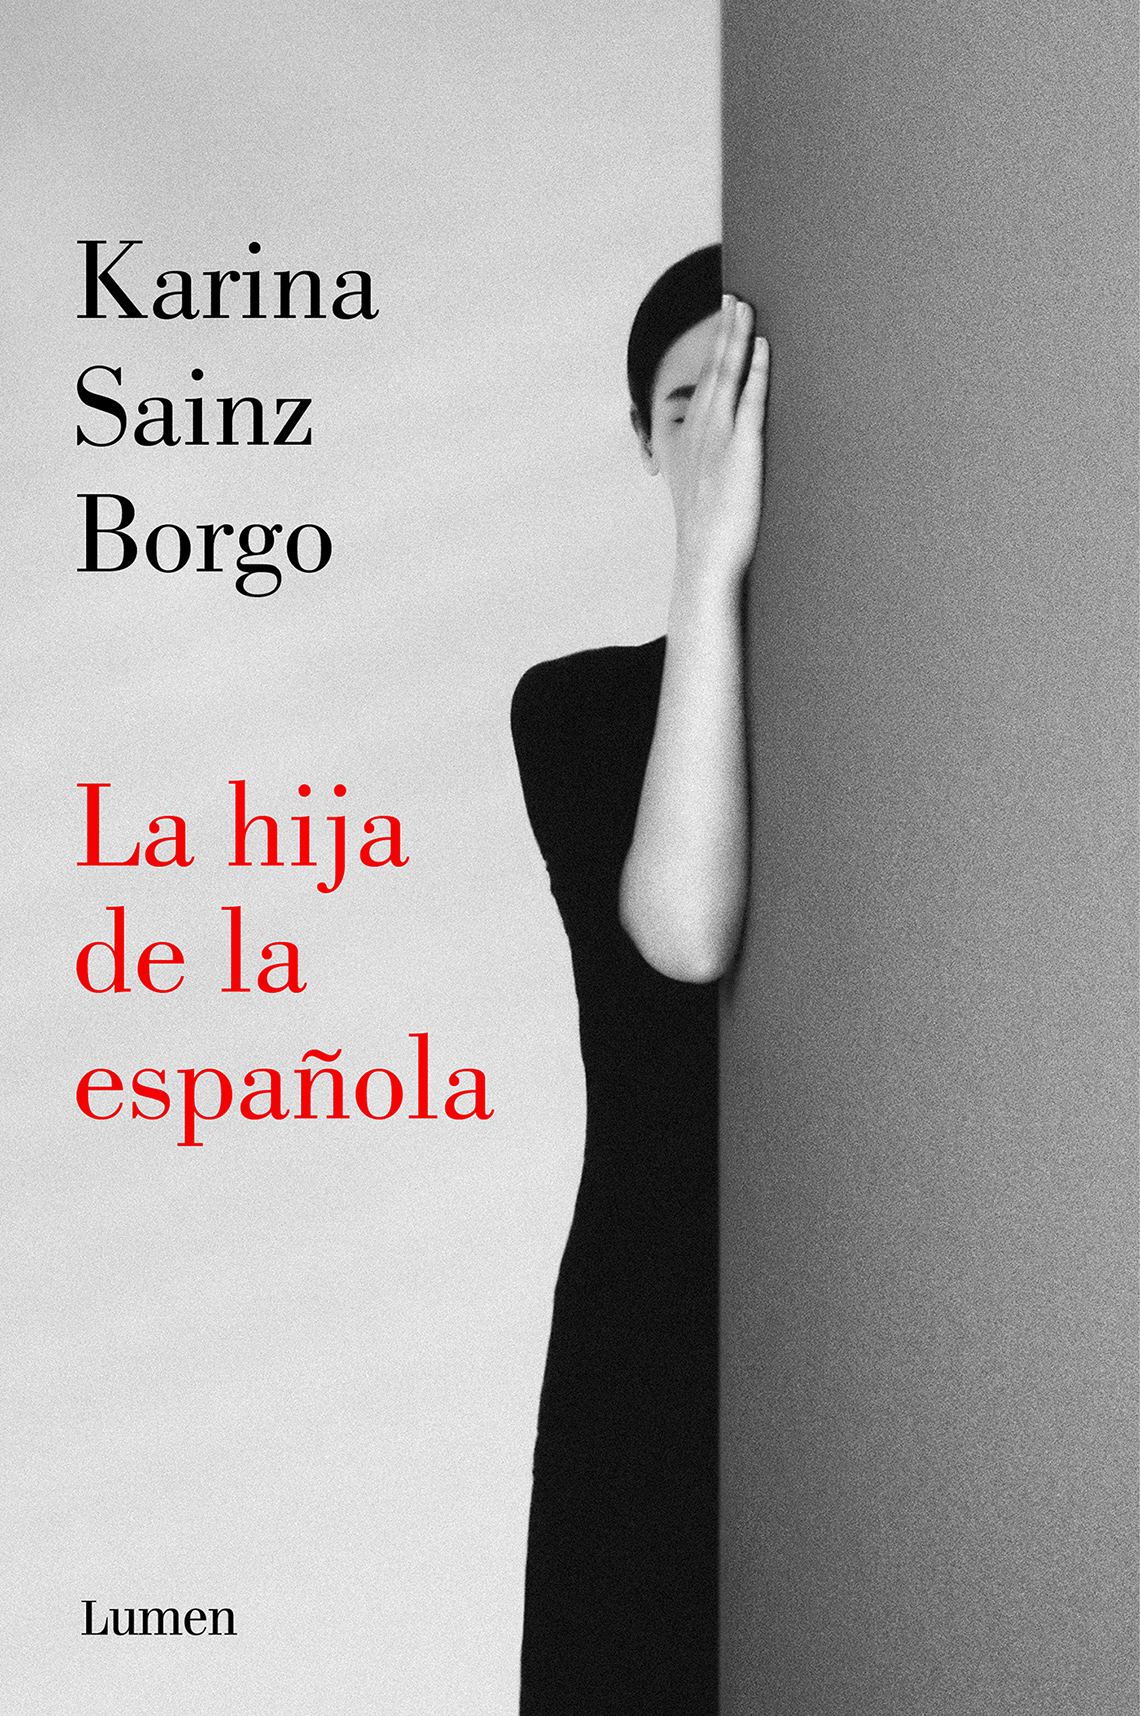 Portada de La hija española de Karina Sainz Borgo.